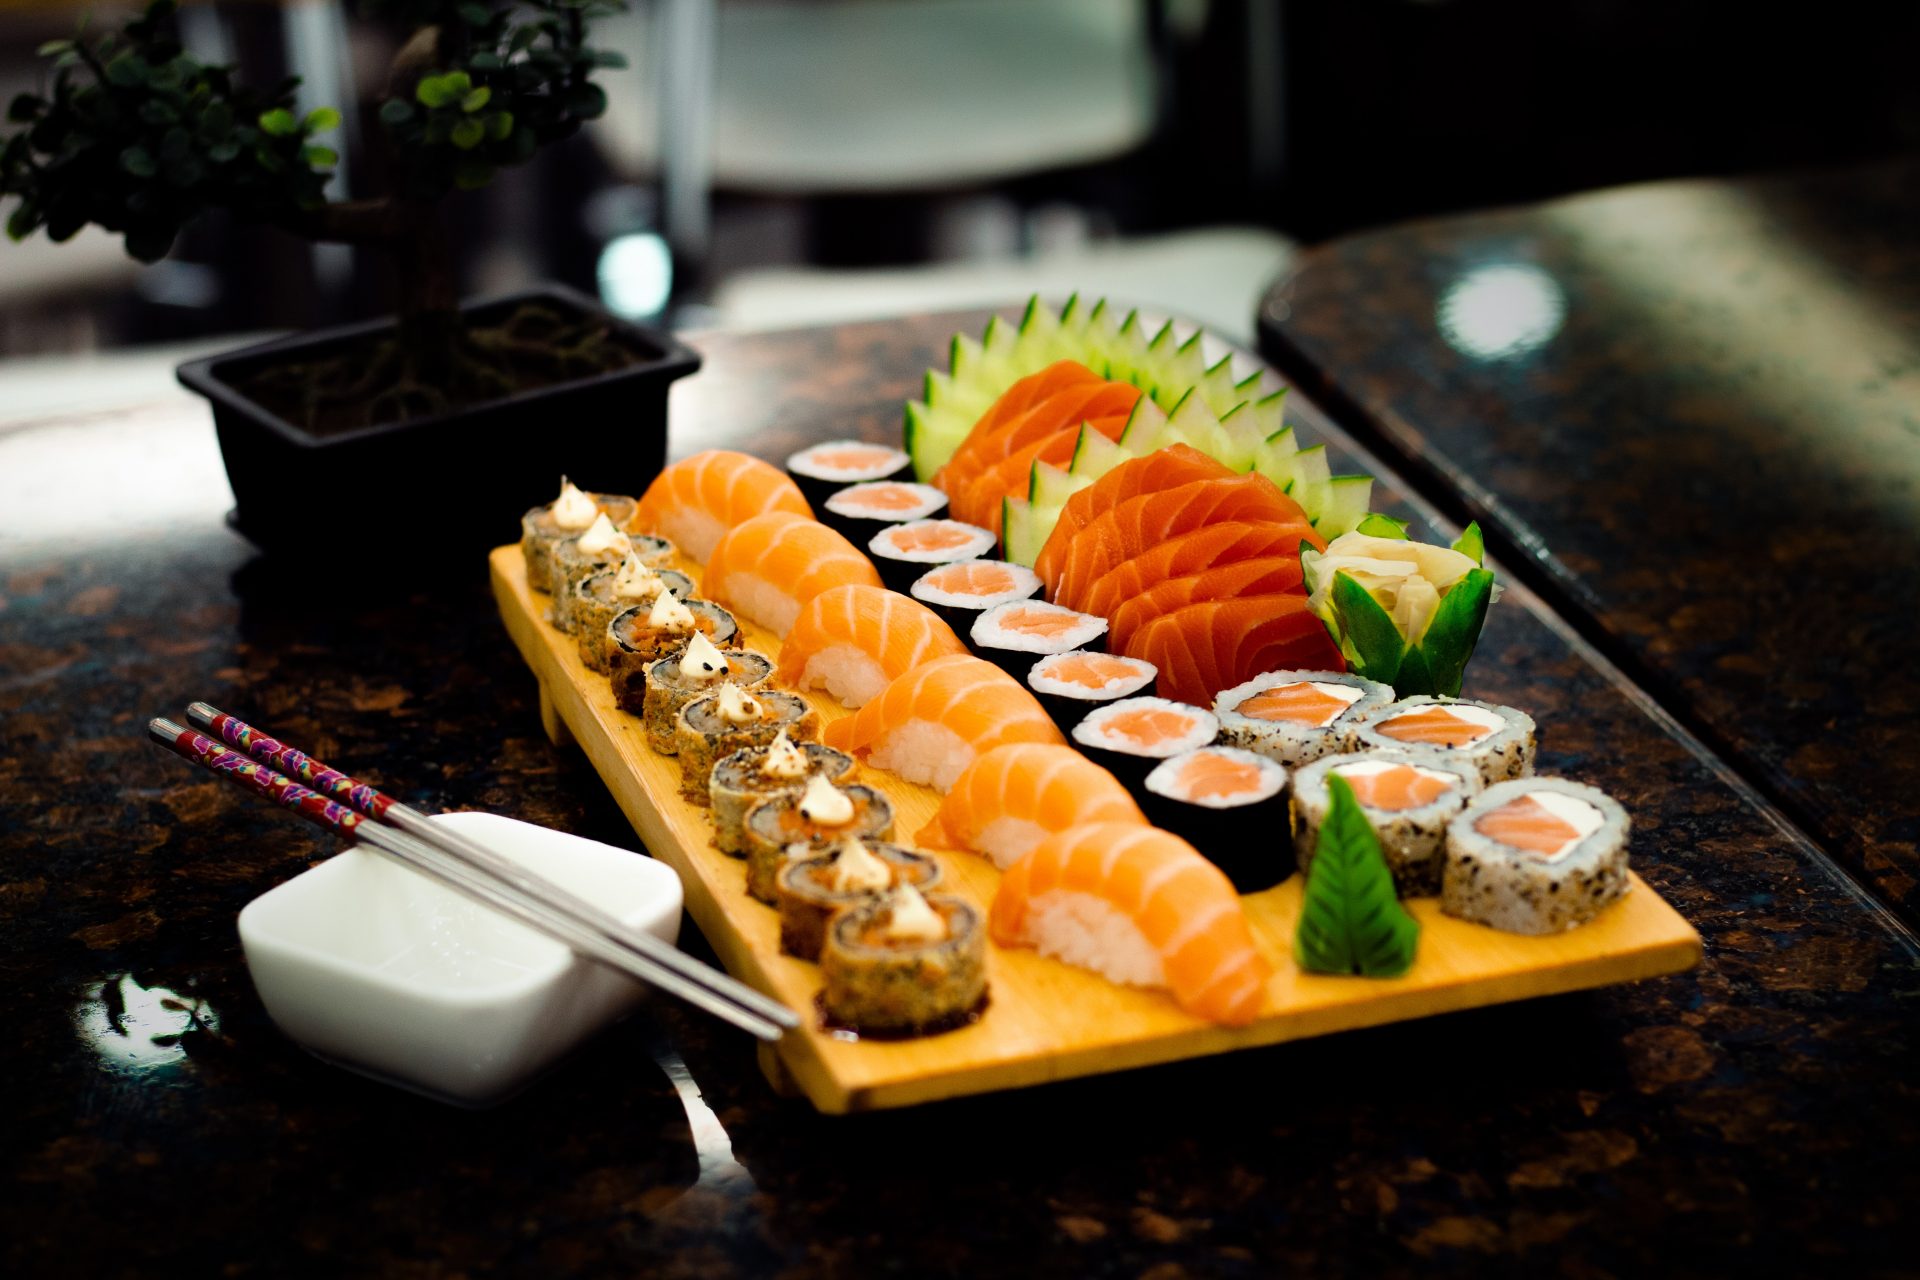 Restaurante em Tóquio serve sushi fitoterápico